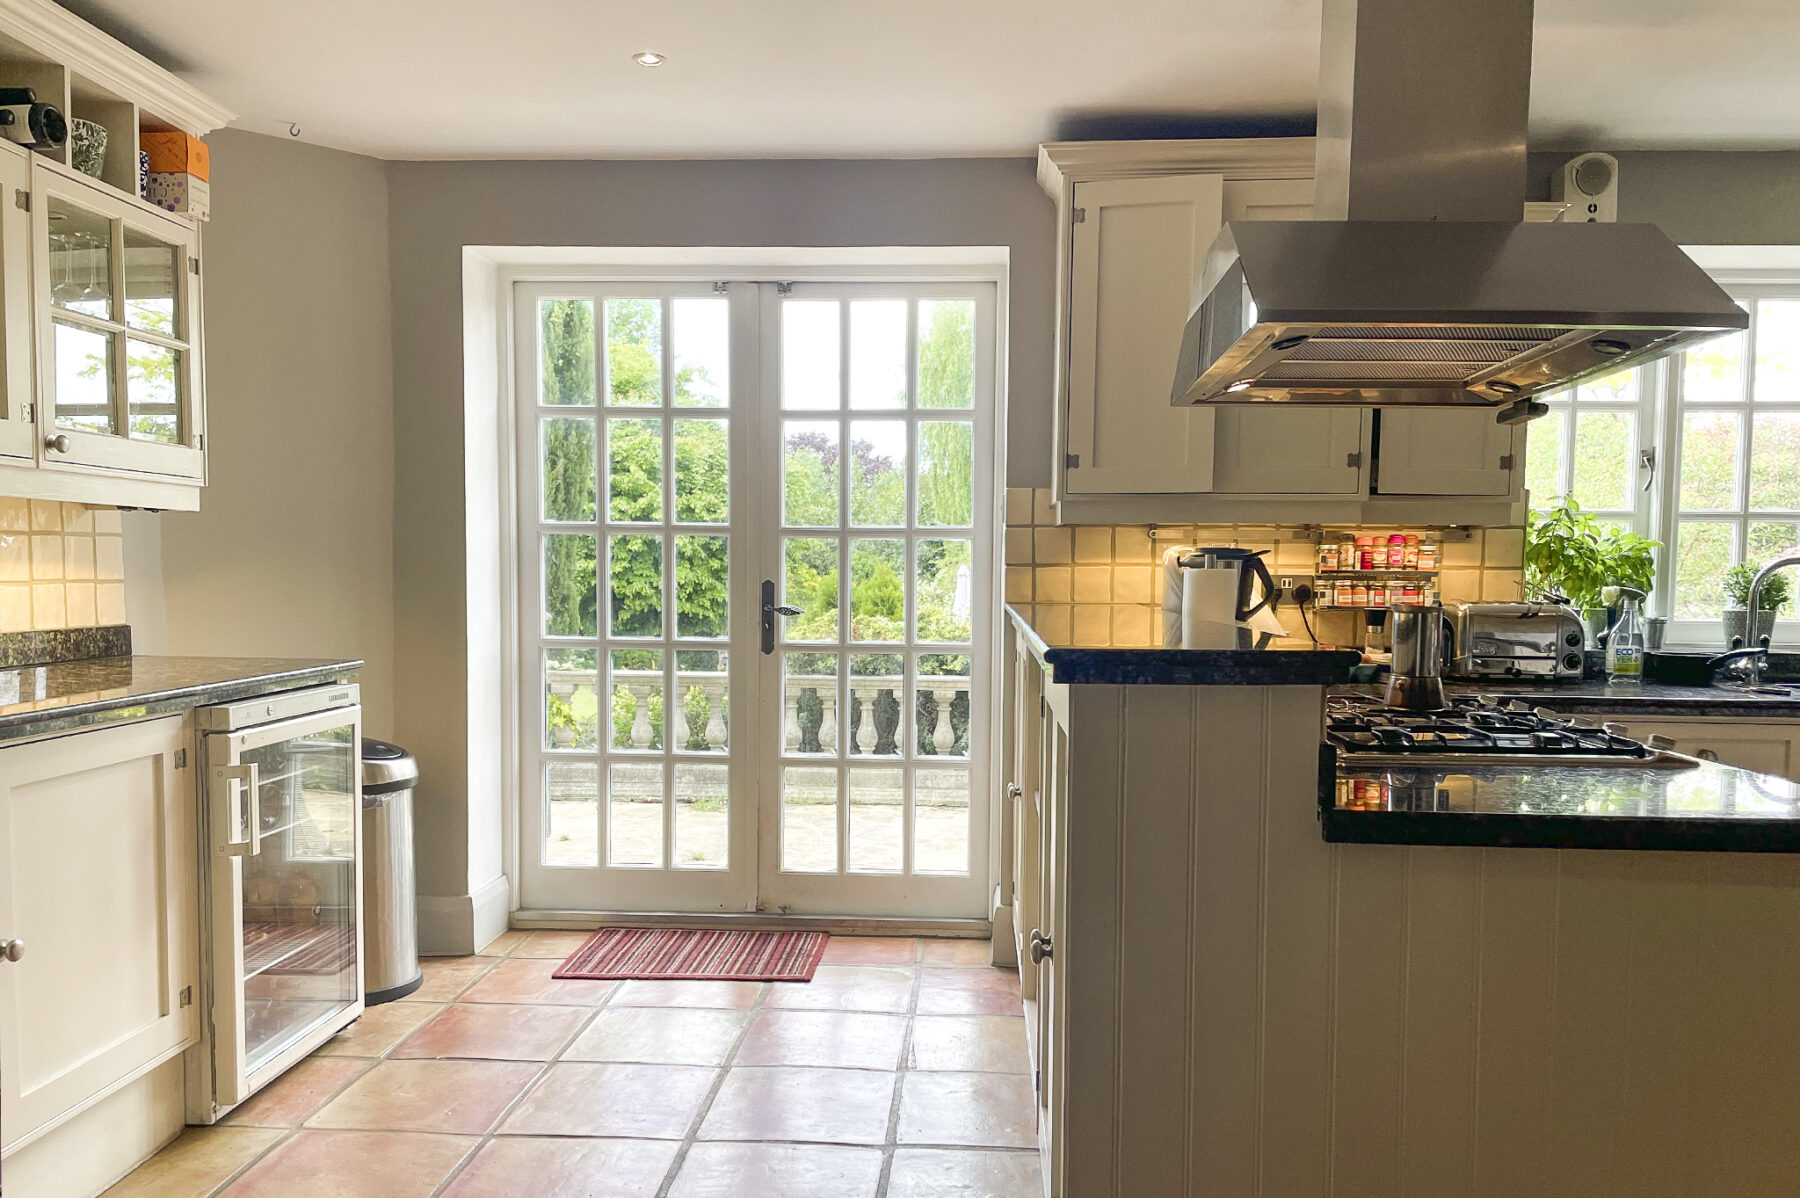 Kitchen terracota floor cooker worktops glass doors garden TV filming location hire lodge London 94